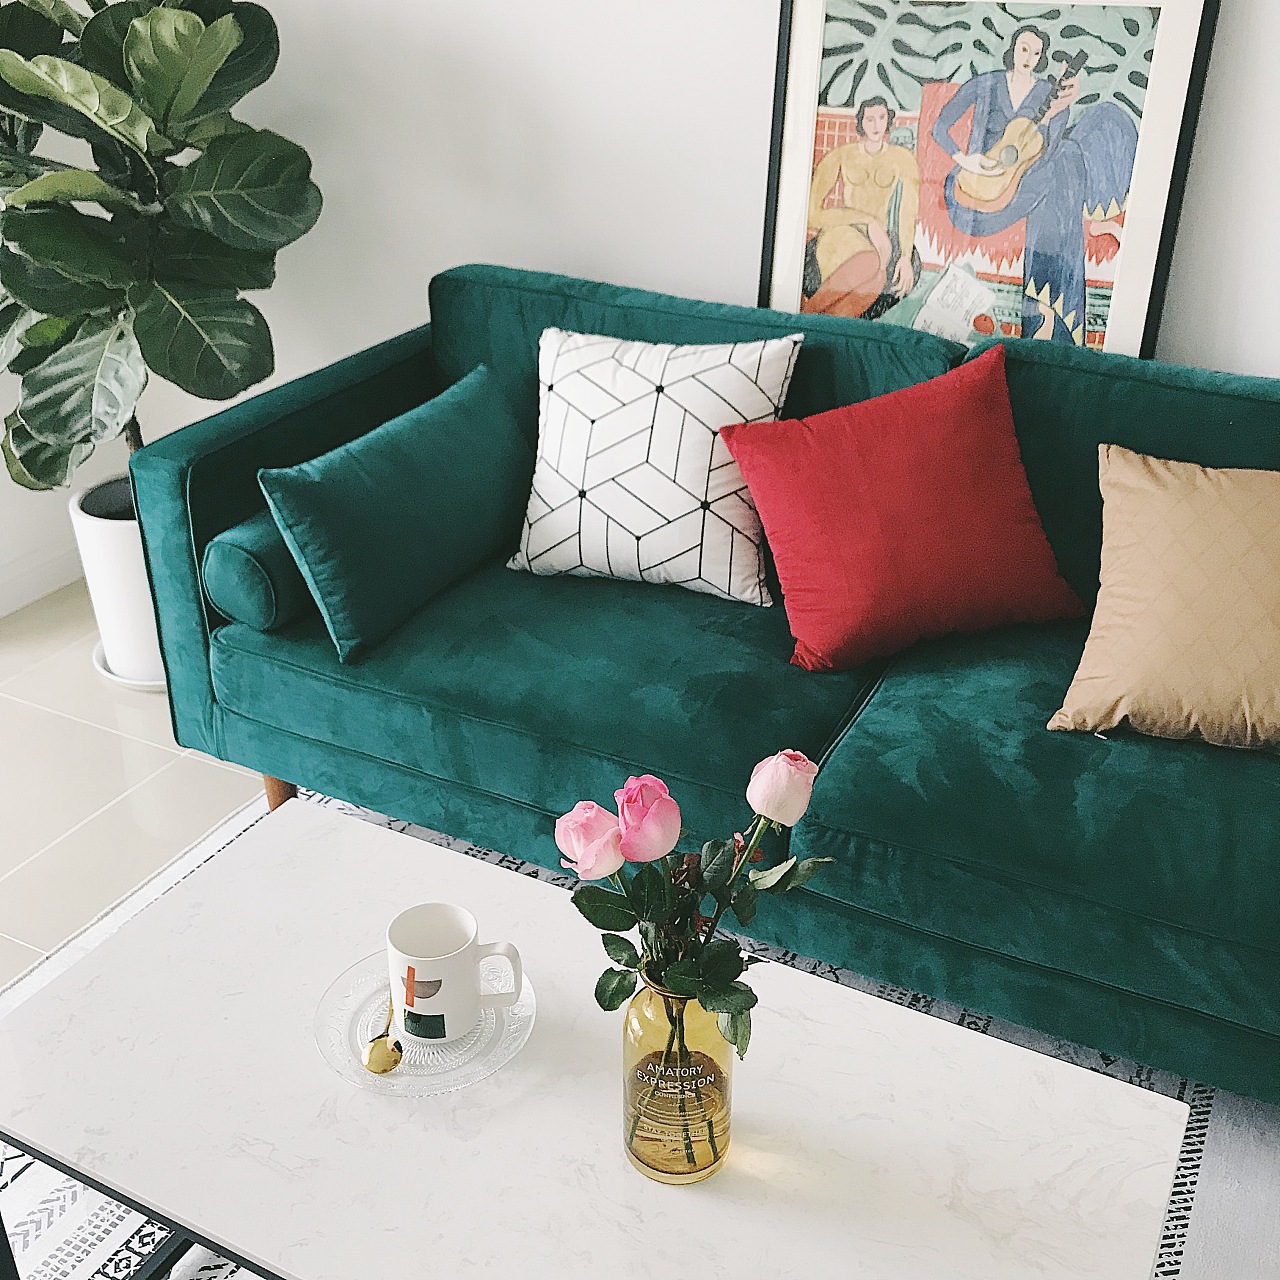 原创简约新中式墨绿色客厅沙发抱枕靠垫样板房间靠垫汽车会所靠包-淘宝网